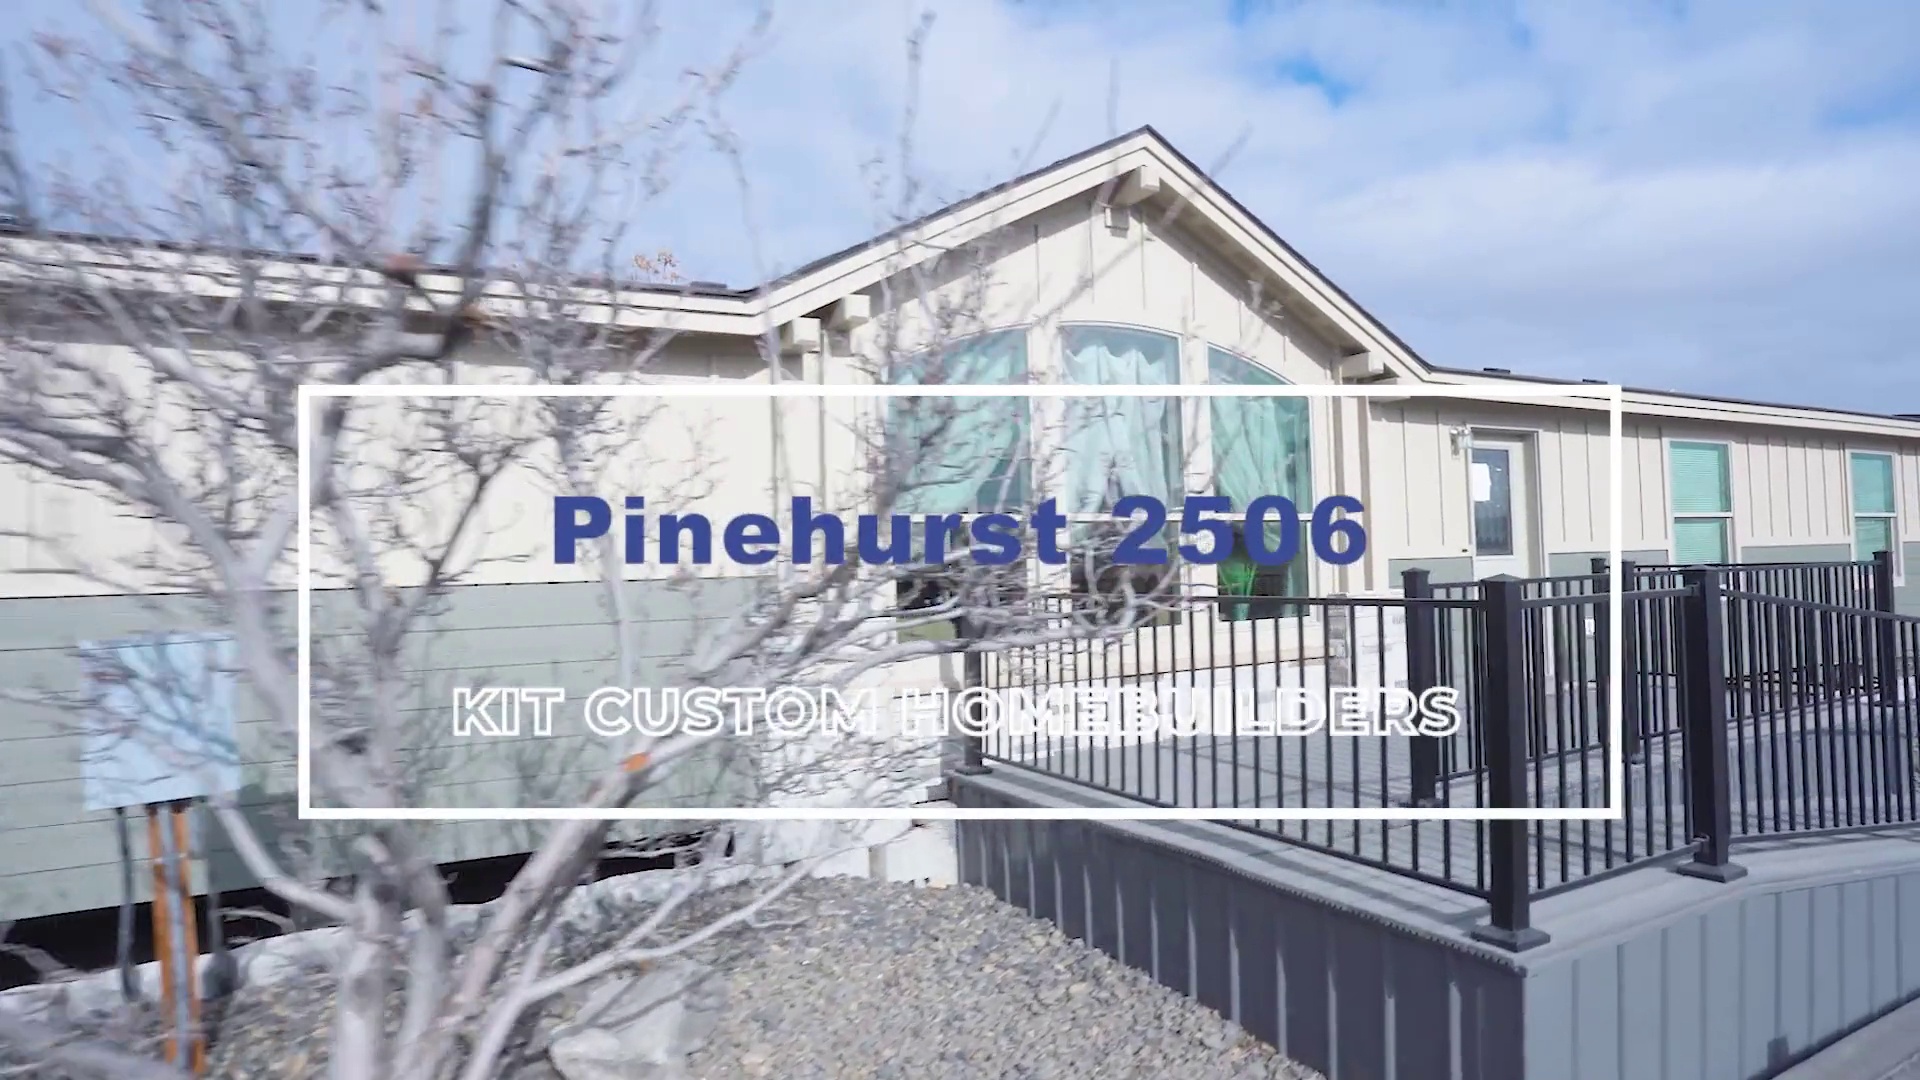 Pinehurst Custom Home Builder